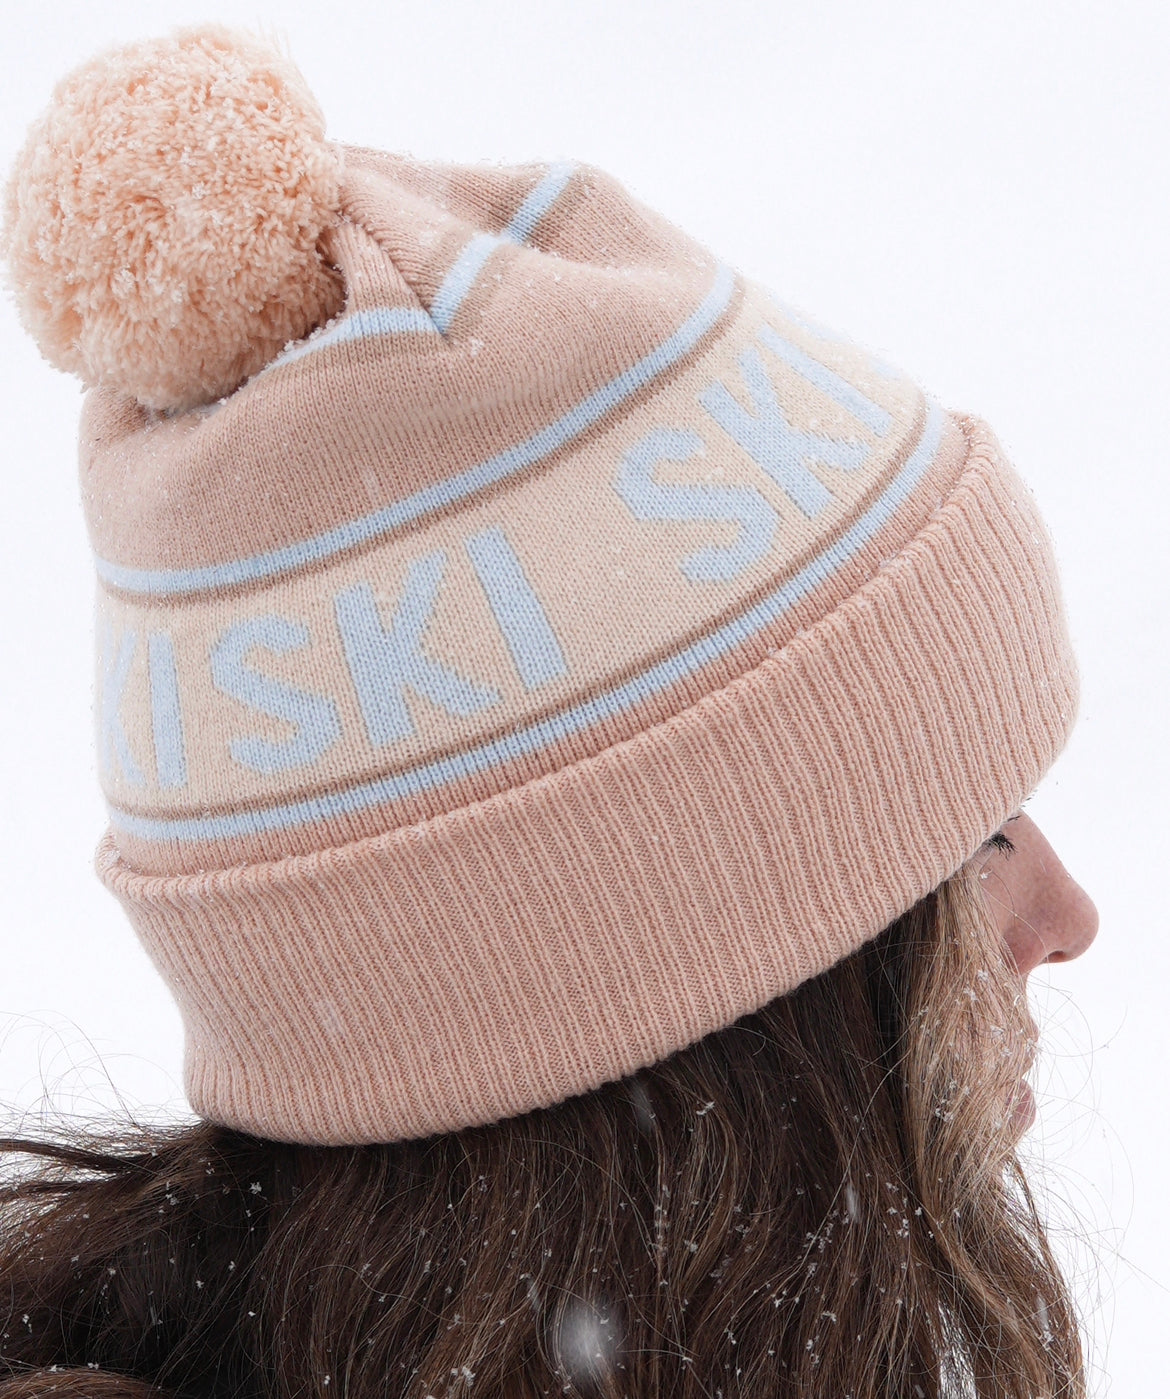 Retro SKI - Beanie / Winter hat